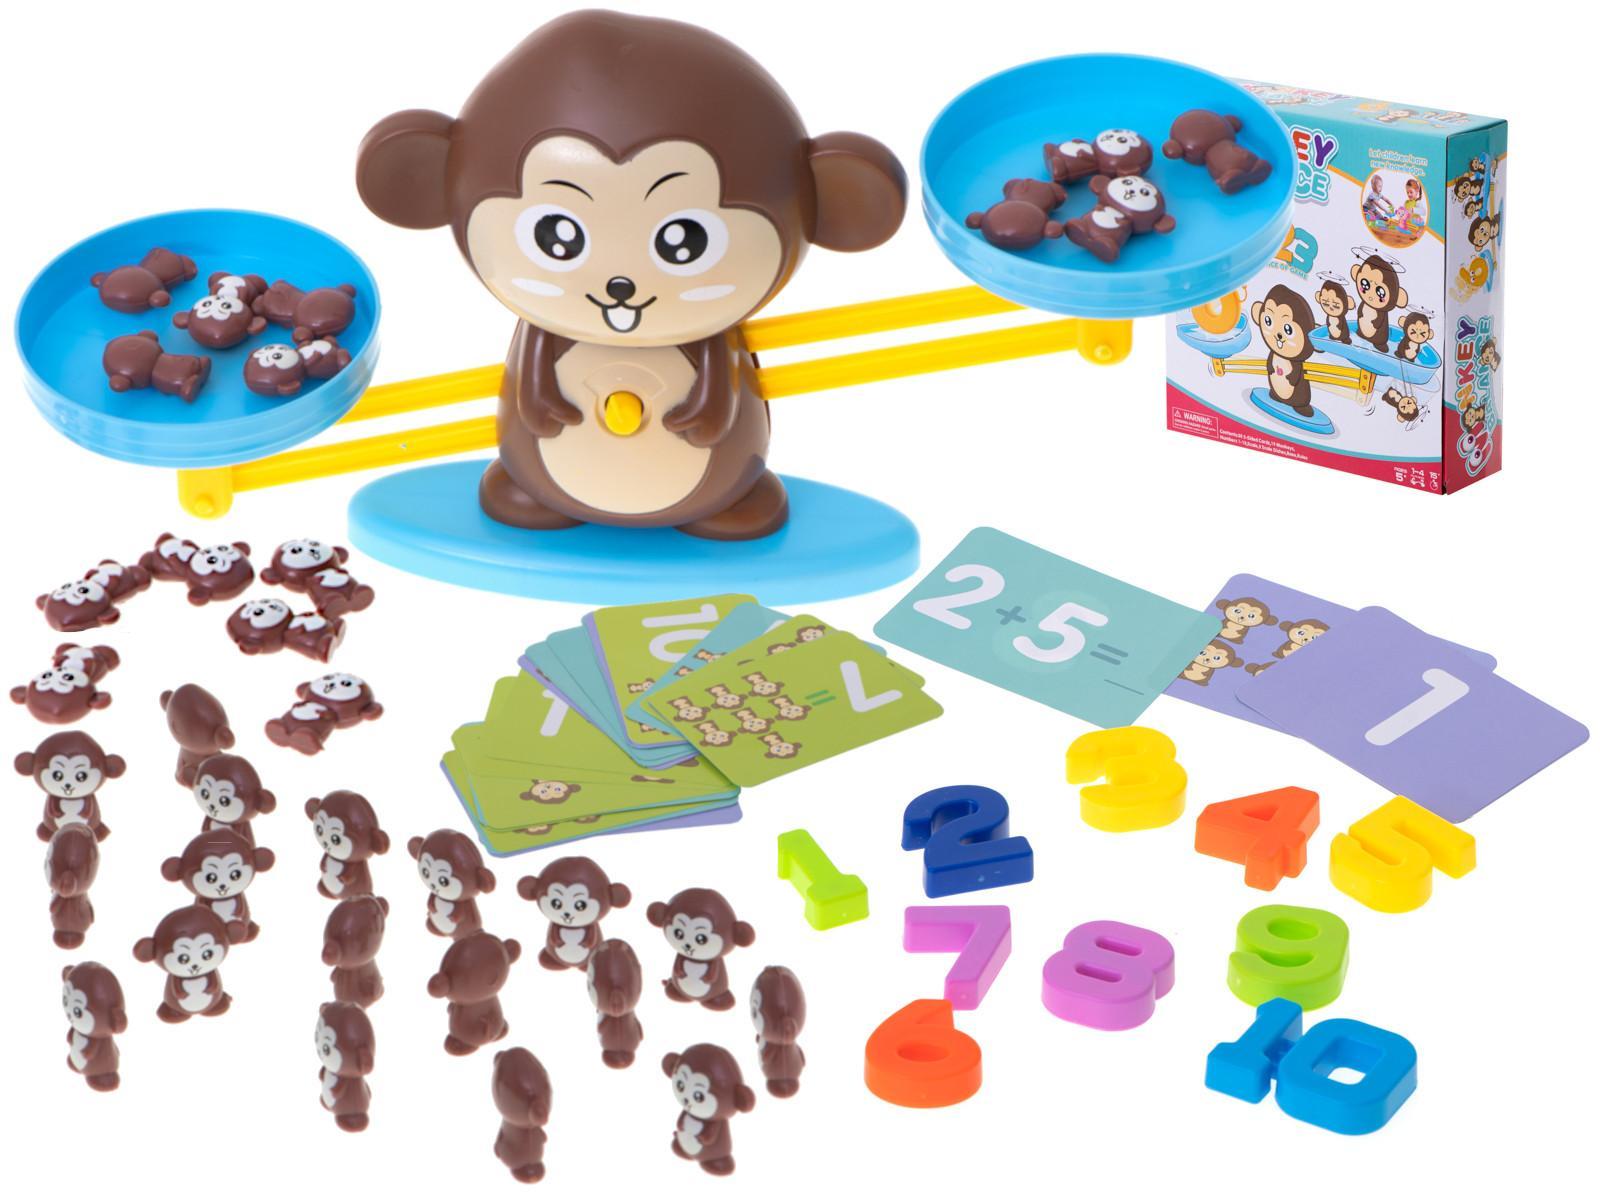 Waga szalkowa edukacyjna nauka liczenia małpka duża dla dzieci 34,5x9,5x8 cm 14 Full Screen